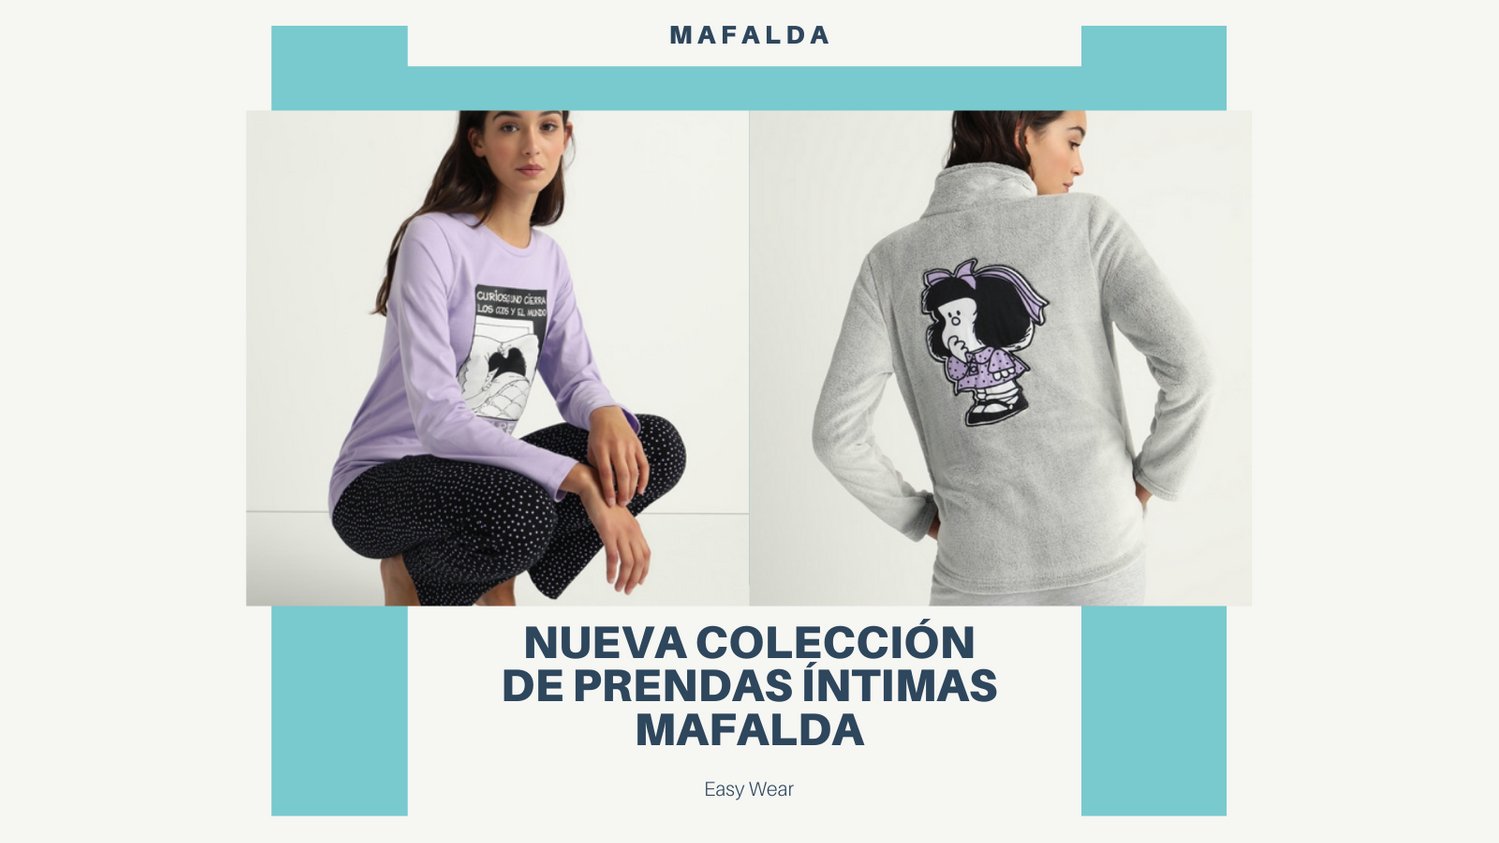 Mafalda Oficial on Twitter: "Nueva colección de prendas íntimas Mafalda en exclusiva en el @elcorteingles, que podréis encontrar en su página web 🥰 #quino #mafaldalove #pijama #easywear #elcorteingles #navidad https://t.co/HaZ7SIFxy7" /